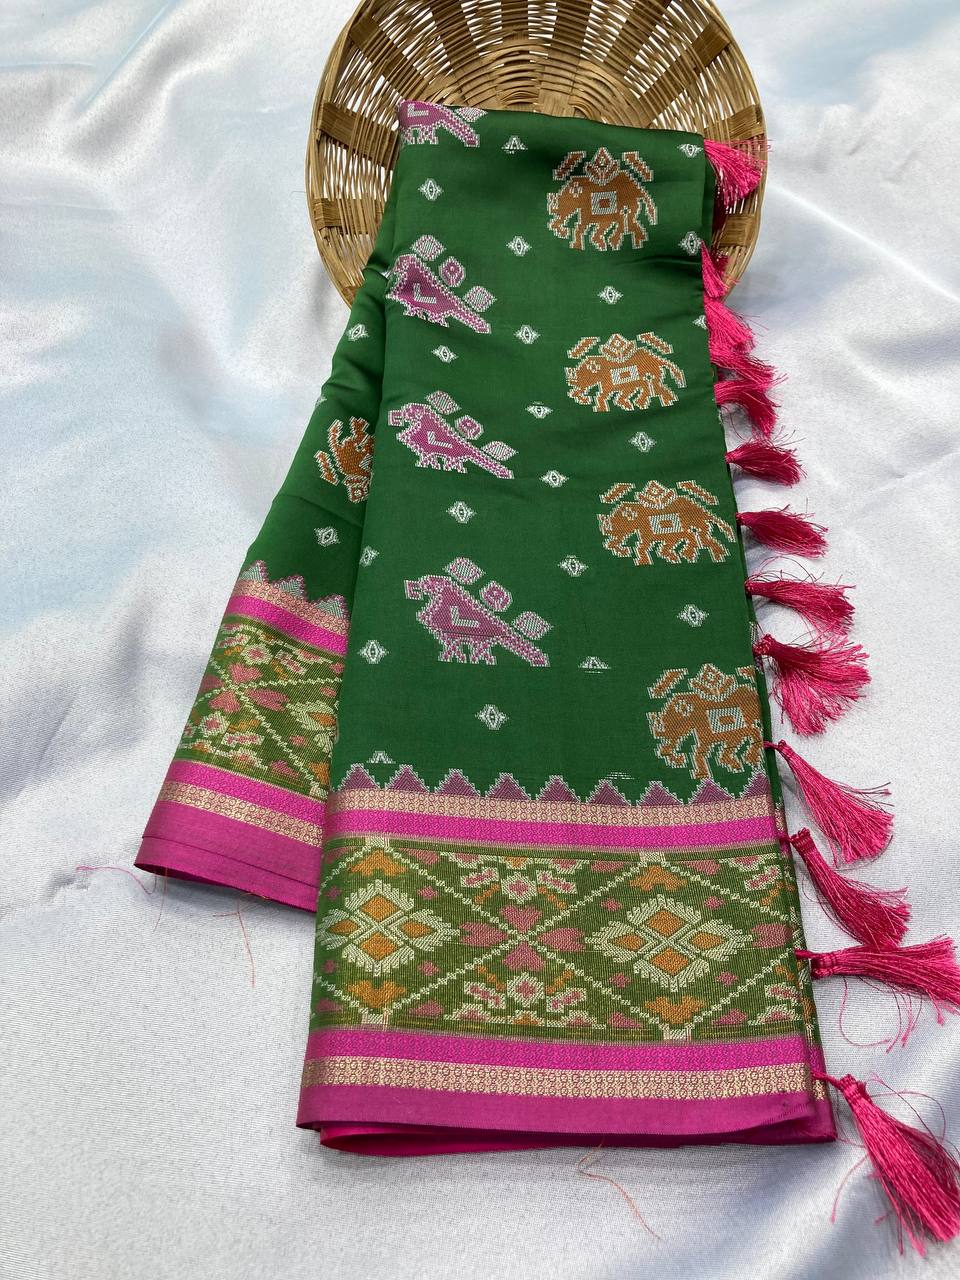 Authentic Patola green Saree in Soft Banarasi Silk  Rapier Jacquard Work - Colorful Saree